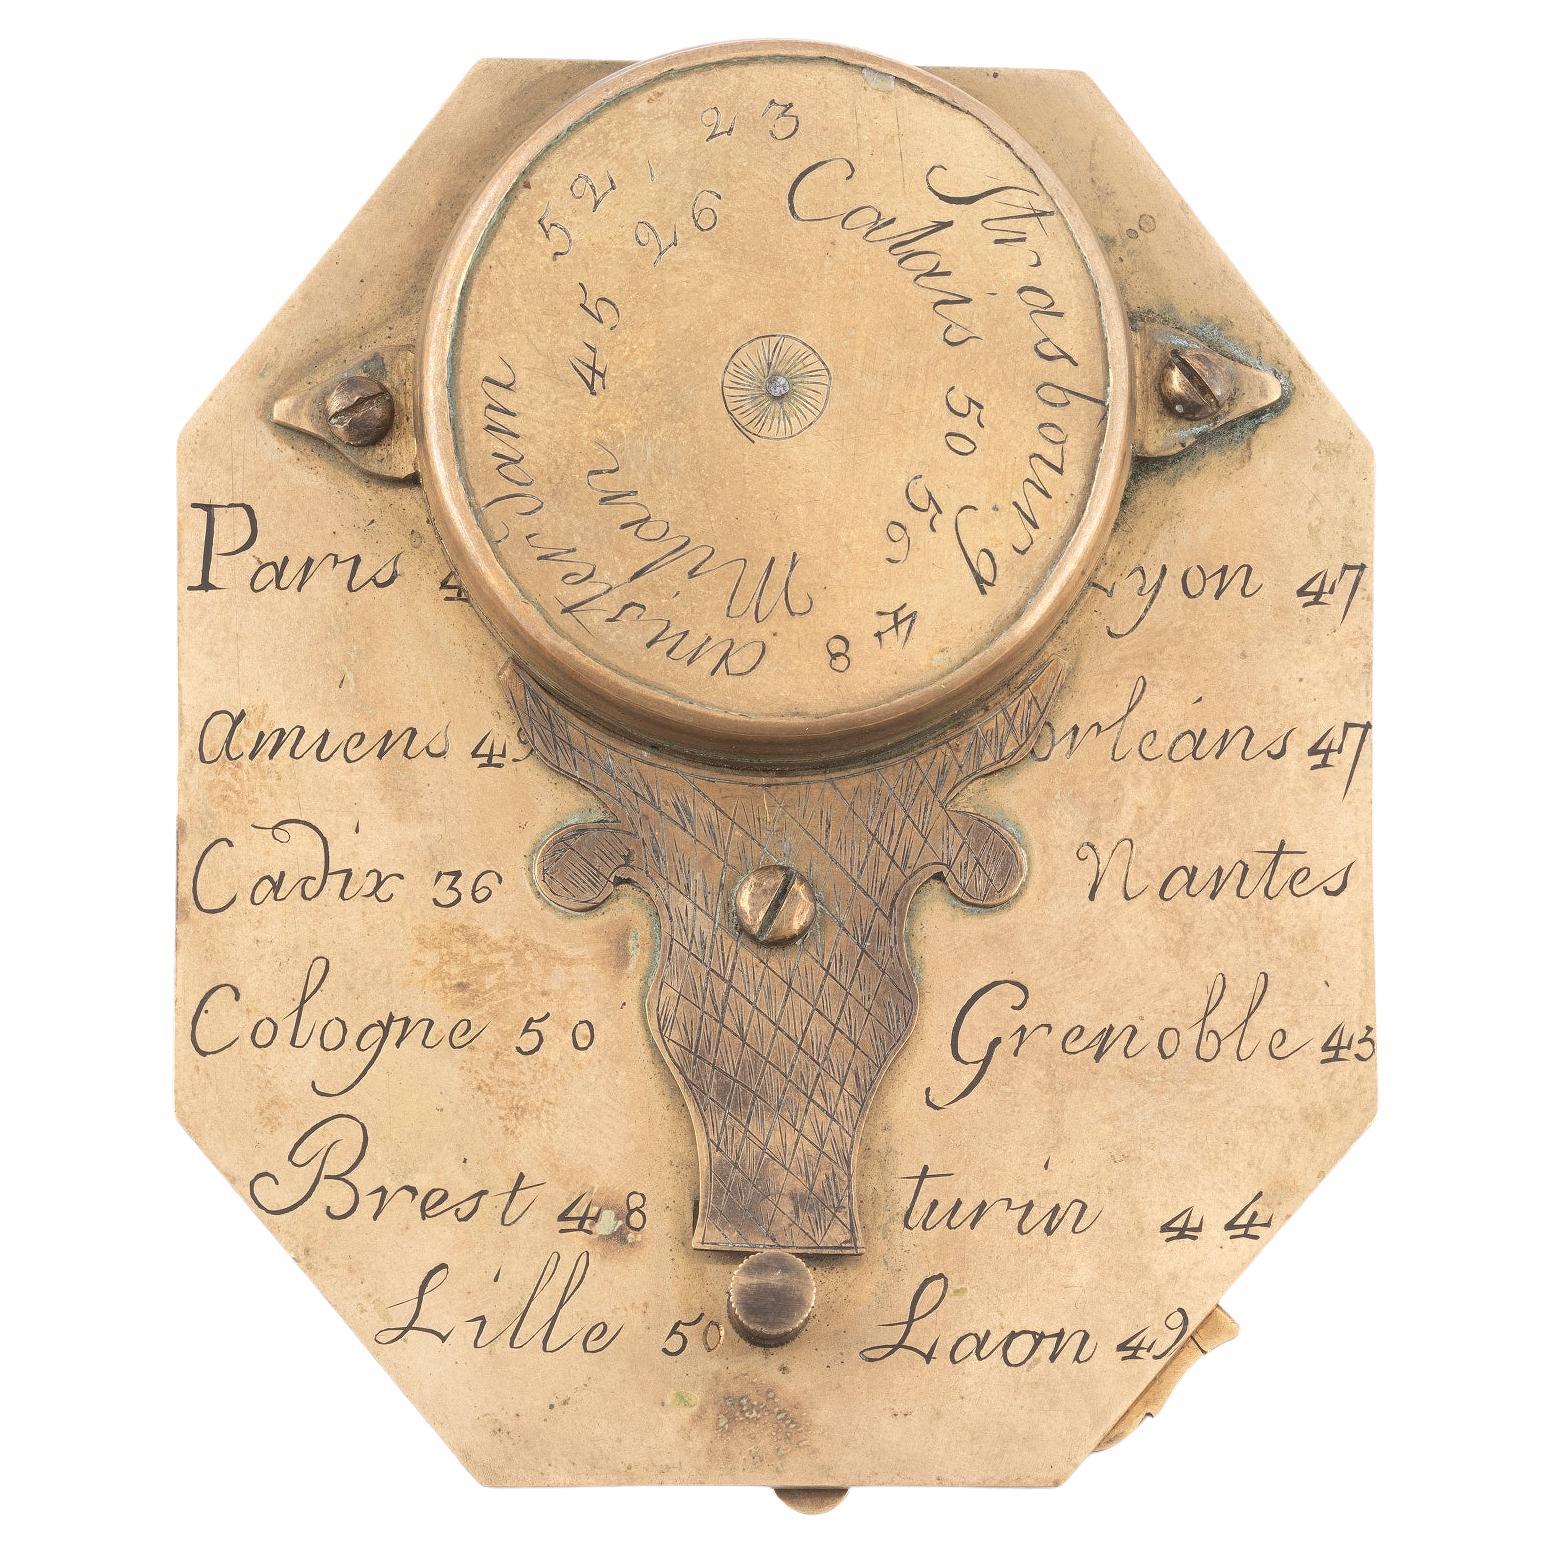 signiert Buterfield A Paris, achteckiges Zifferblatt mit aufklappbarem Gnomon und Vogelzeiger, eingesetztem Kompass und eingravierter Stundenskala, auf der Rückseite eingravierte Städte und ihre Breitengrade, 7 cm (2¾ Zoll) lang